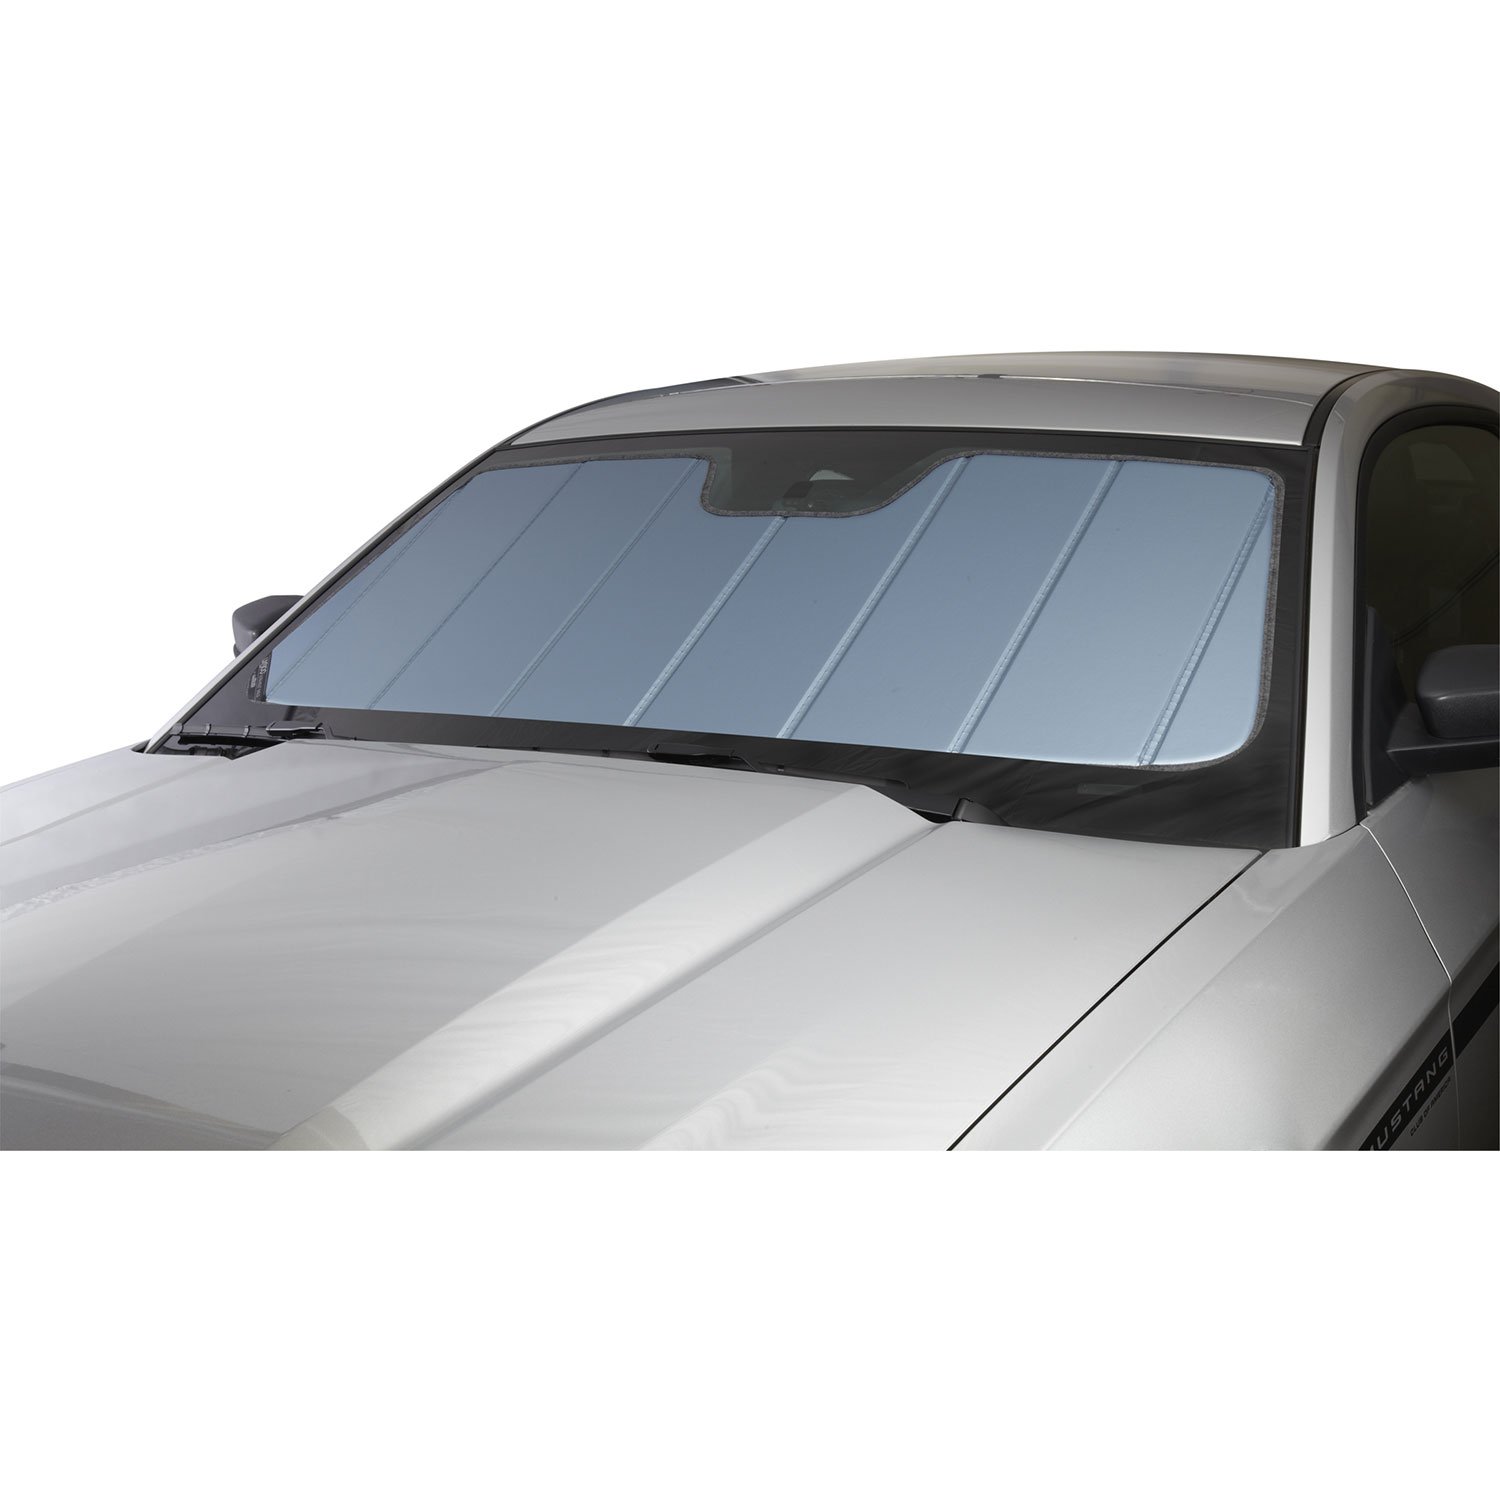 Covercraft UV10252BL Sonnenschutz für ausgewählte Mercedes-Benz 190D/190E Modelle – Laminatmaterial, 1 Stück von Covercraft